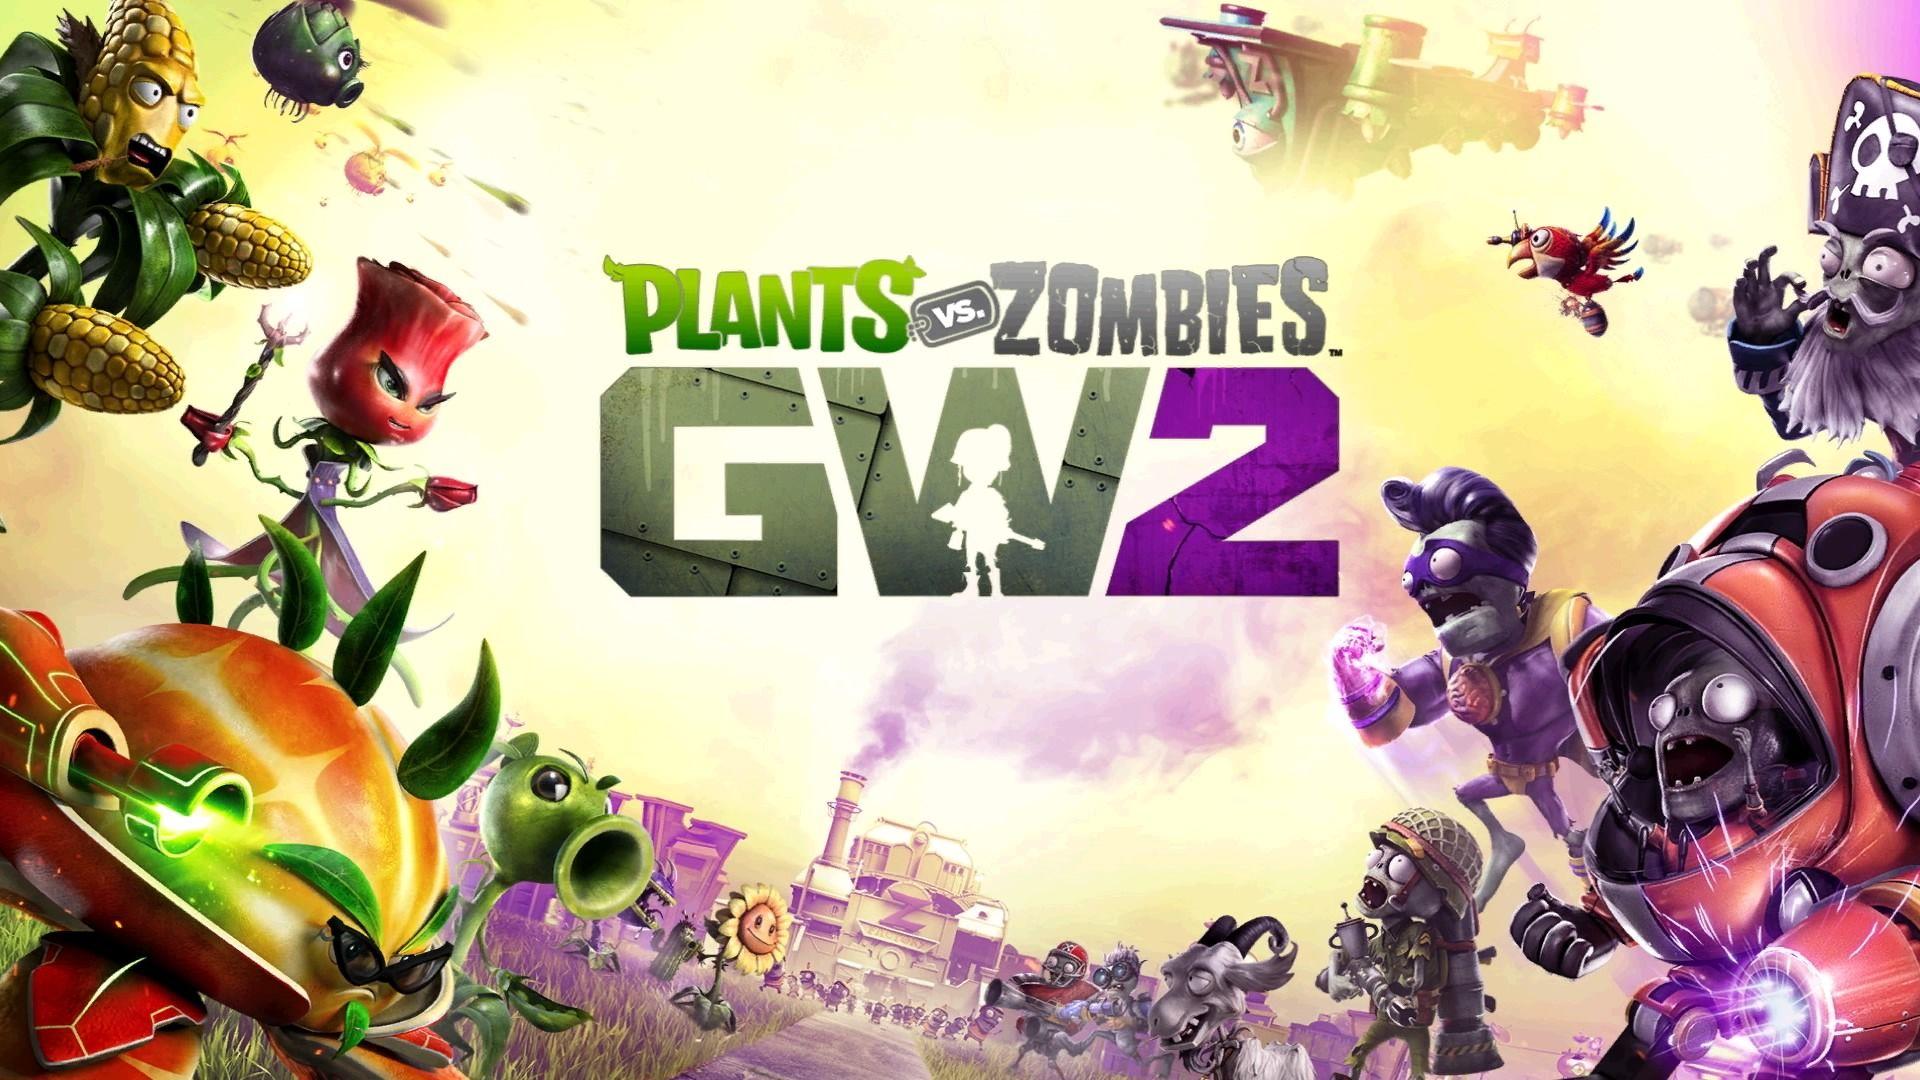 Plants vs. Zombies Garden Warfare 2 Wallpaper HD. Full HD Picture